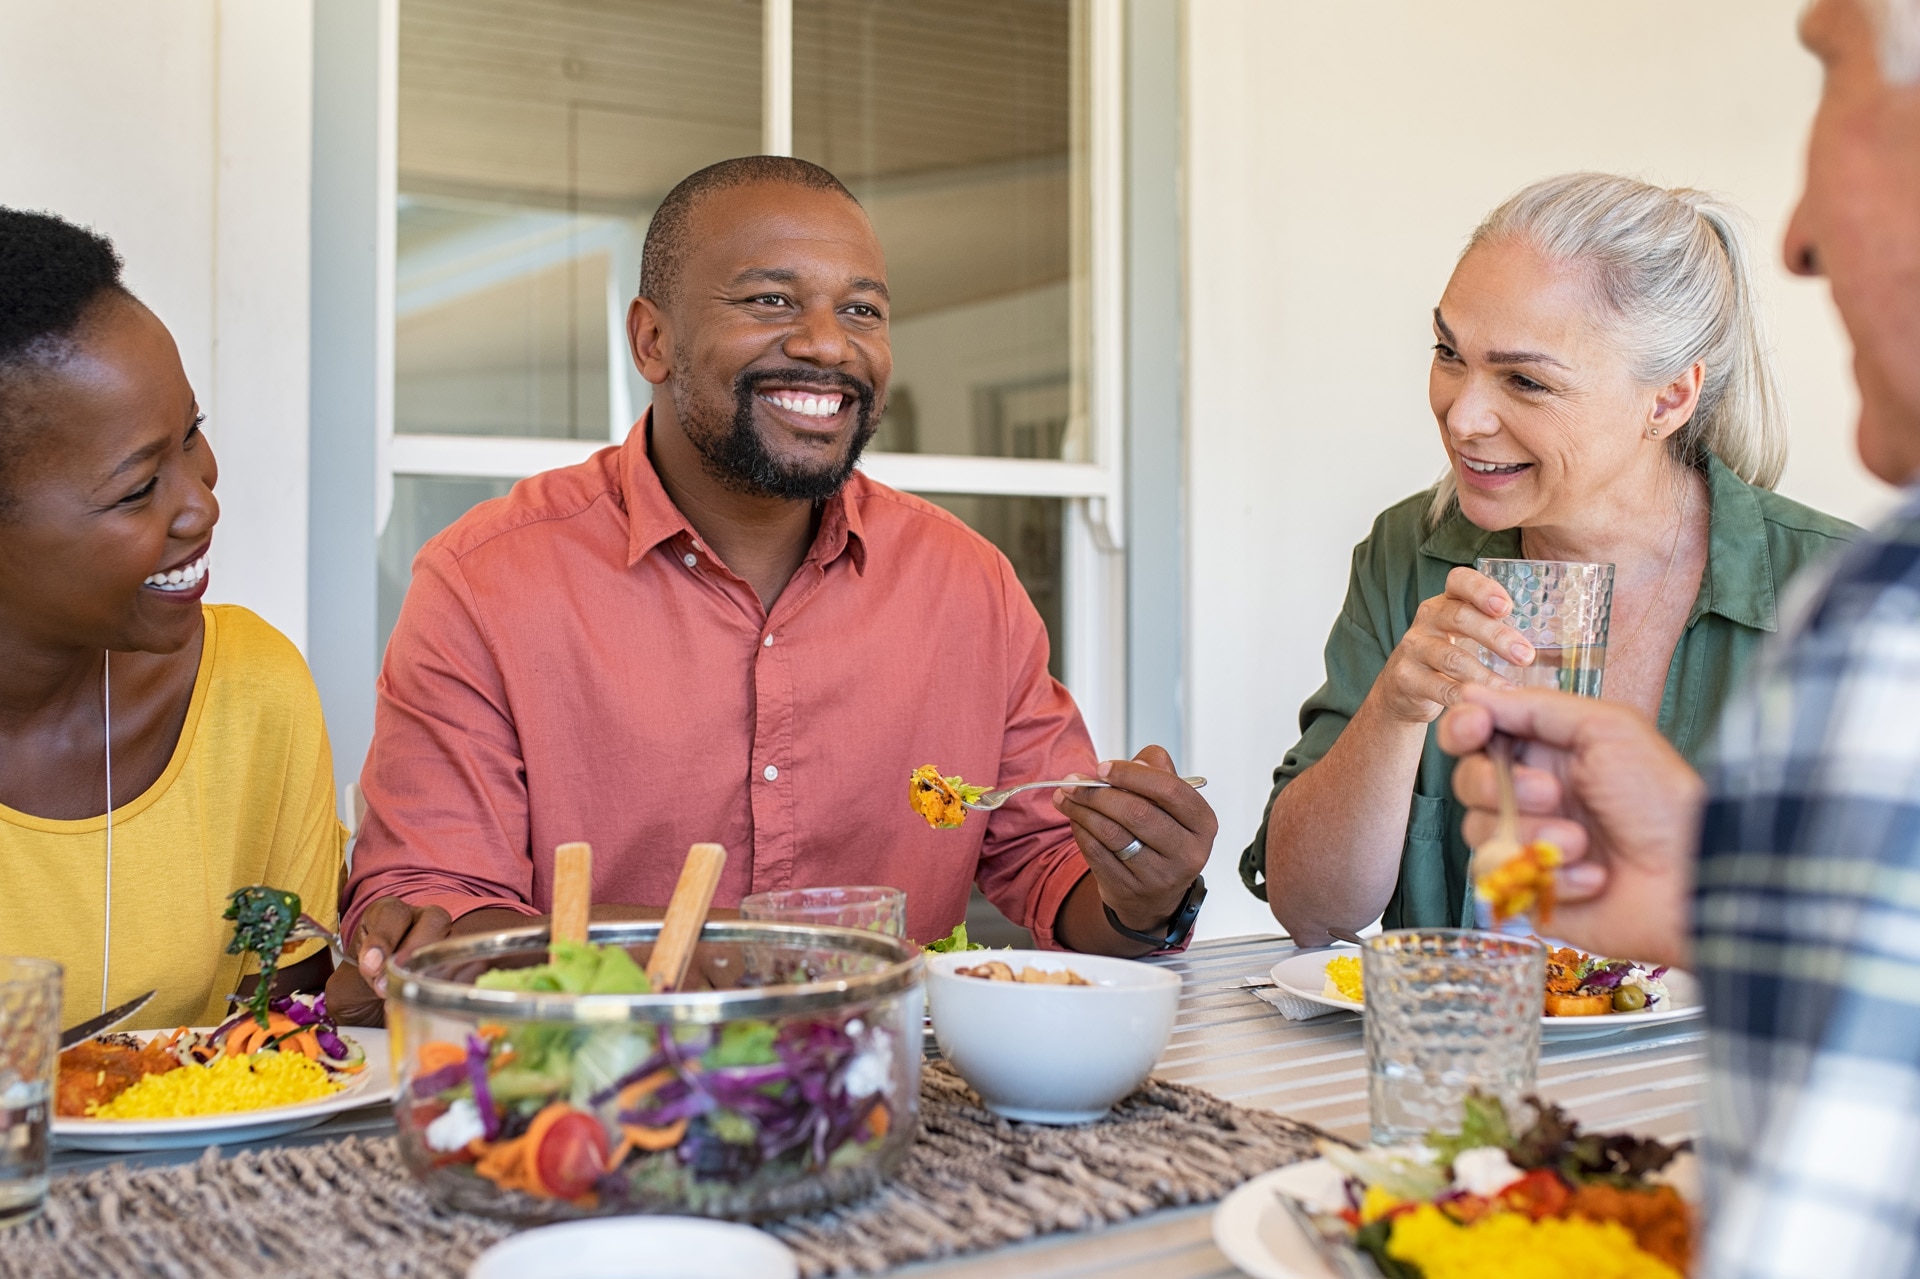 Glada, leende vänner som äter lunch tillsammans hemma Mogna multietniska personer som firar en lycklig tilldragelse med att äta hälsosam mat. En grupp bestående av ett äldre par och ett afrikanskt par som pratar under en måltid.